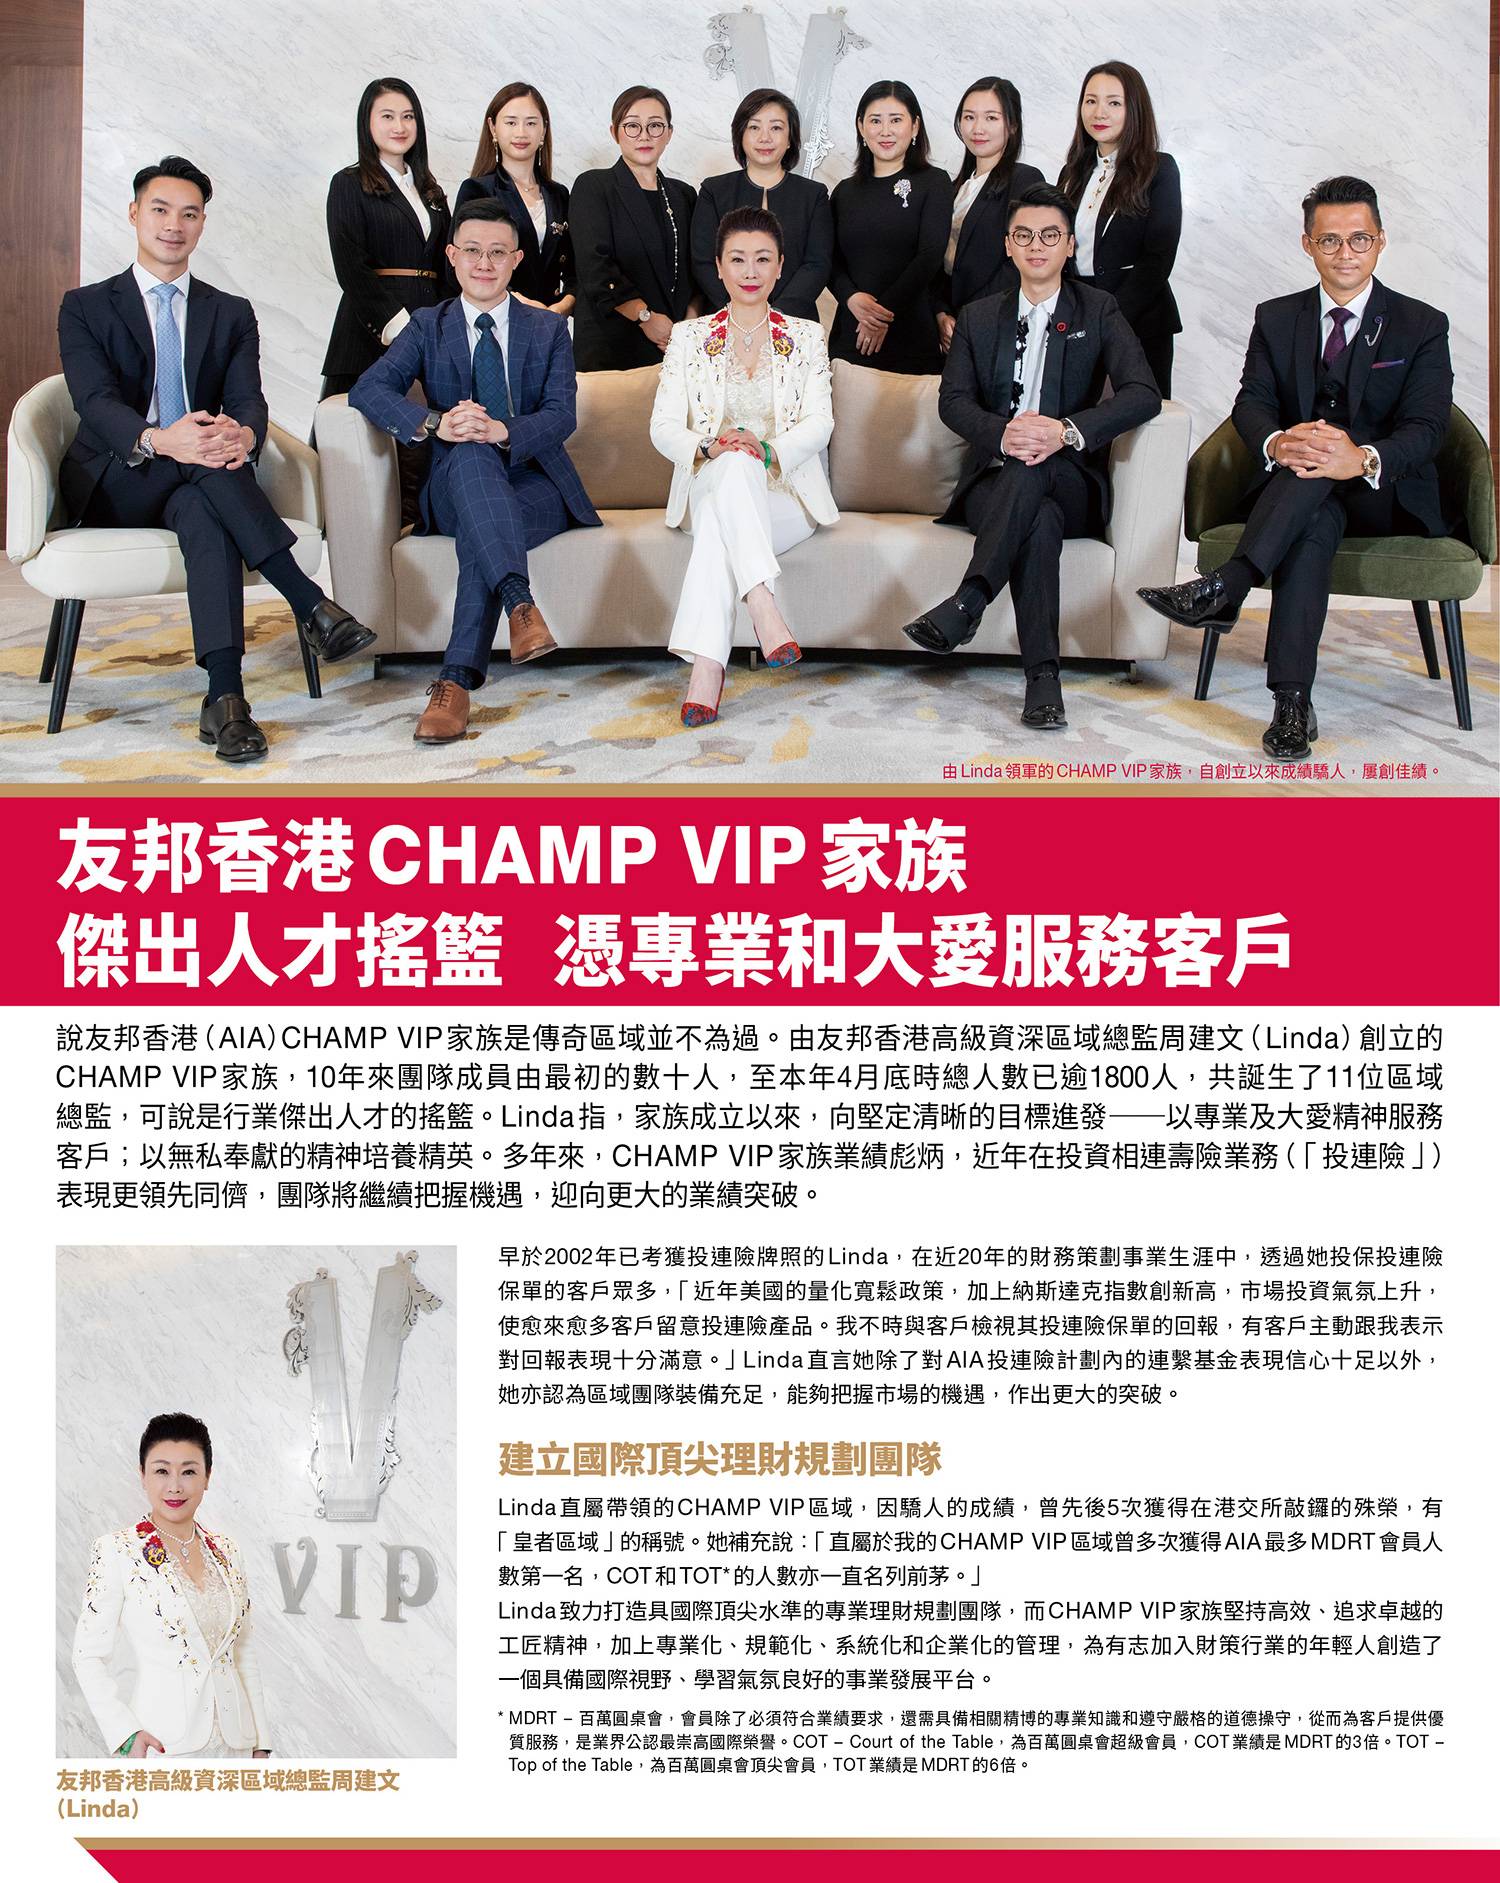 友邦香港CHAMP VIP 家族 傑出人才搖籃 憑專業和大愛服務客戶